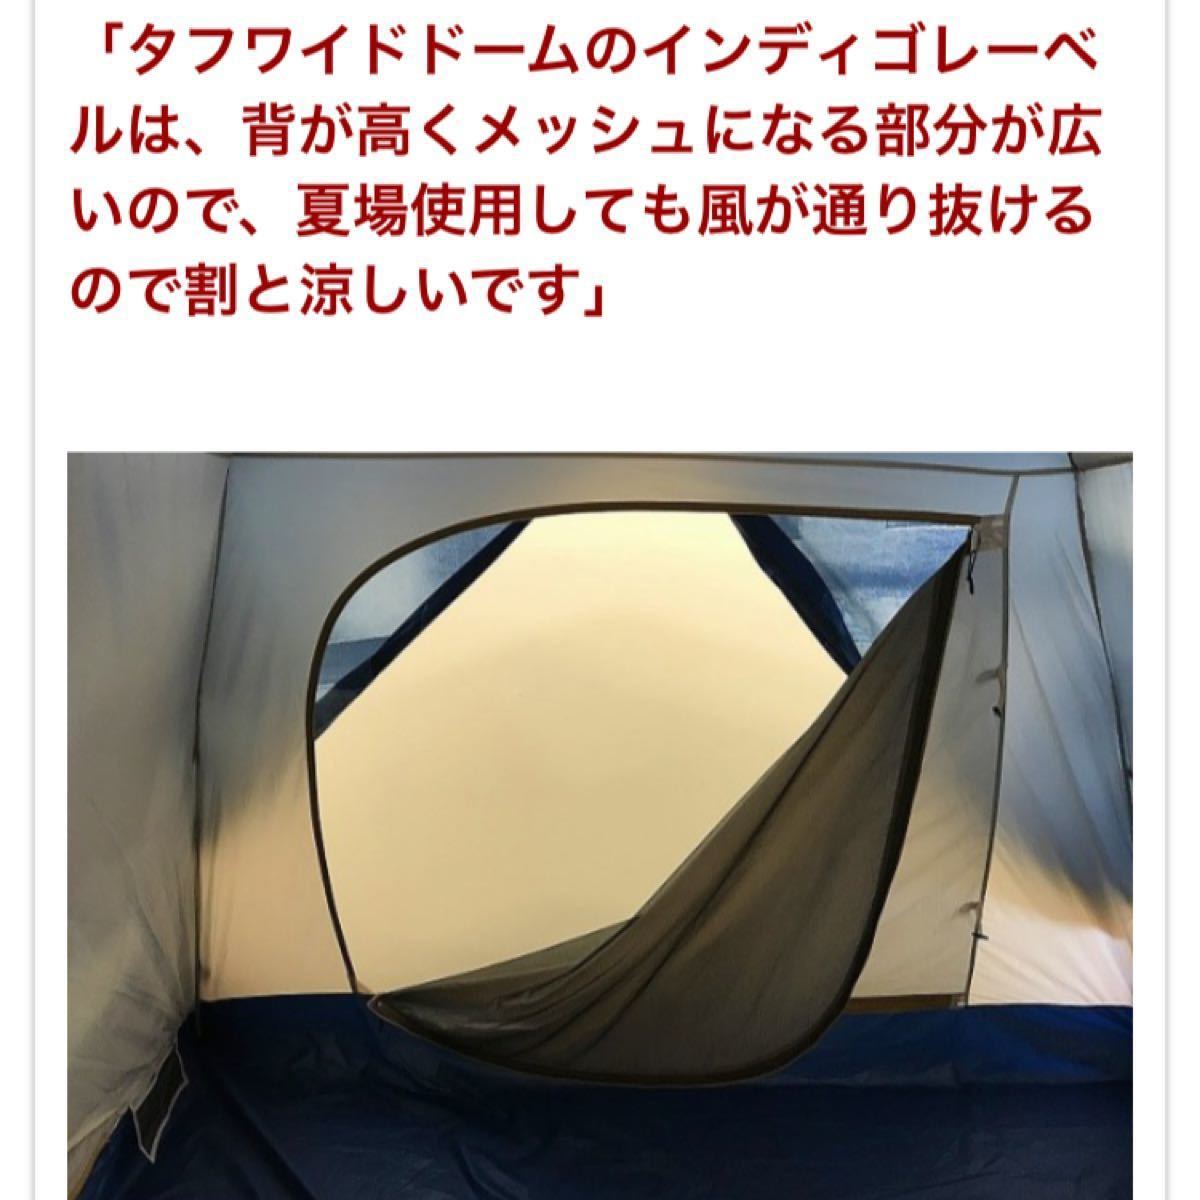 新品 未使用品 限定品 希少品 40周年 激レア モデル 高級 コールマン × monro インディゴ テント キャンプアウトドア